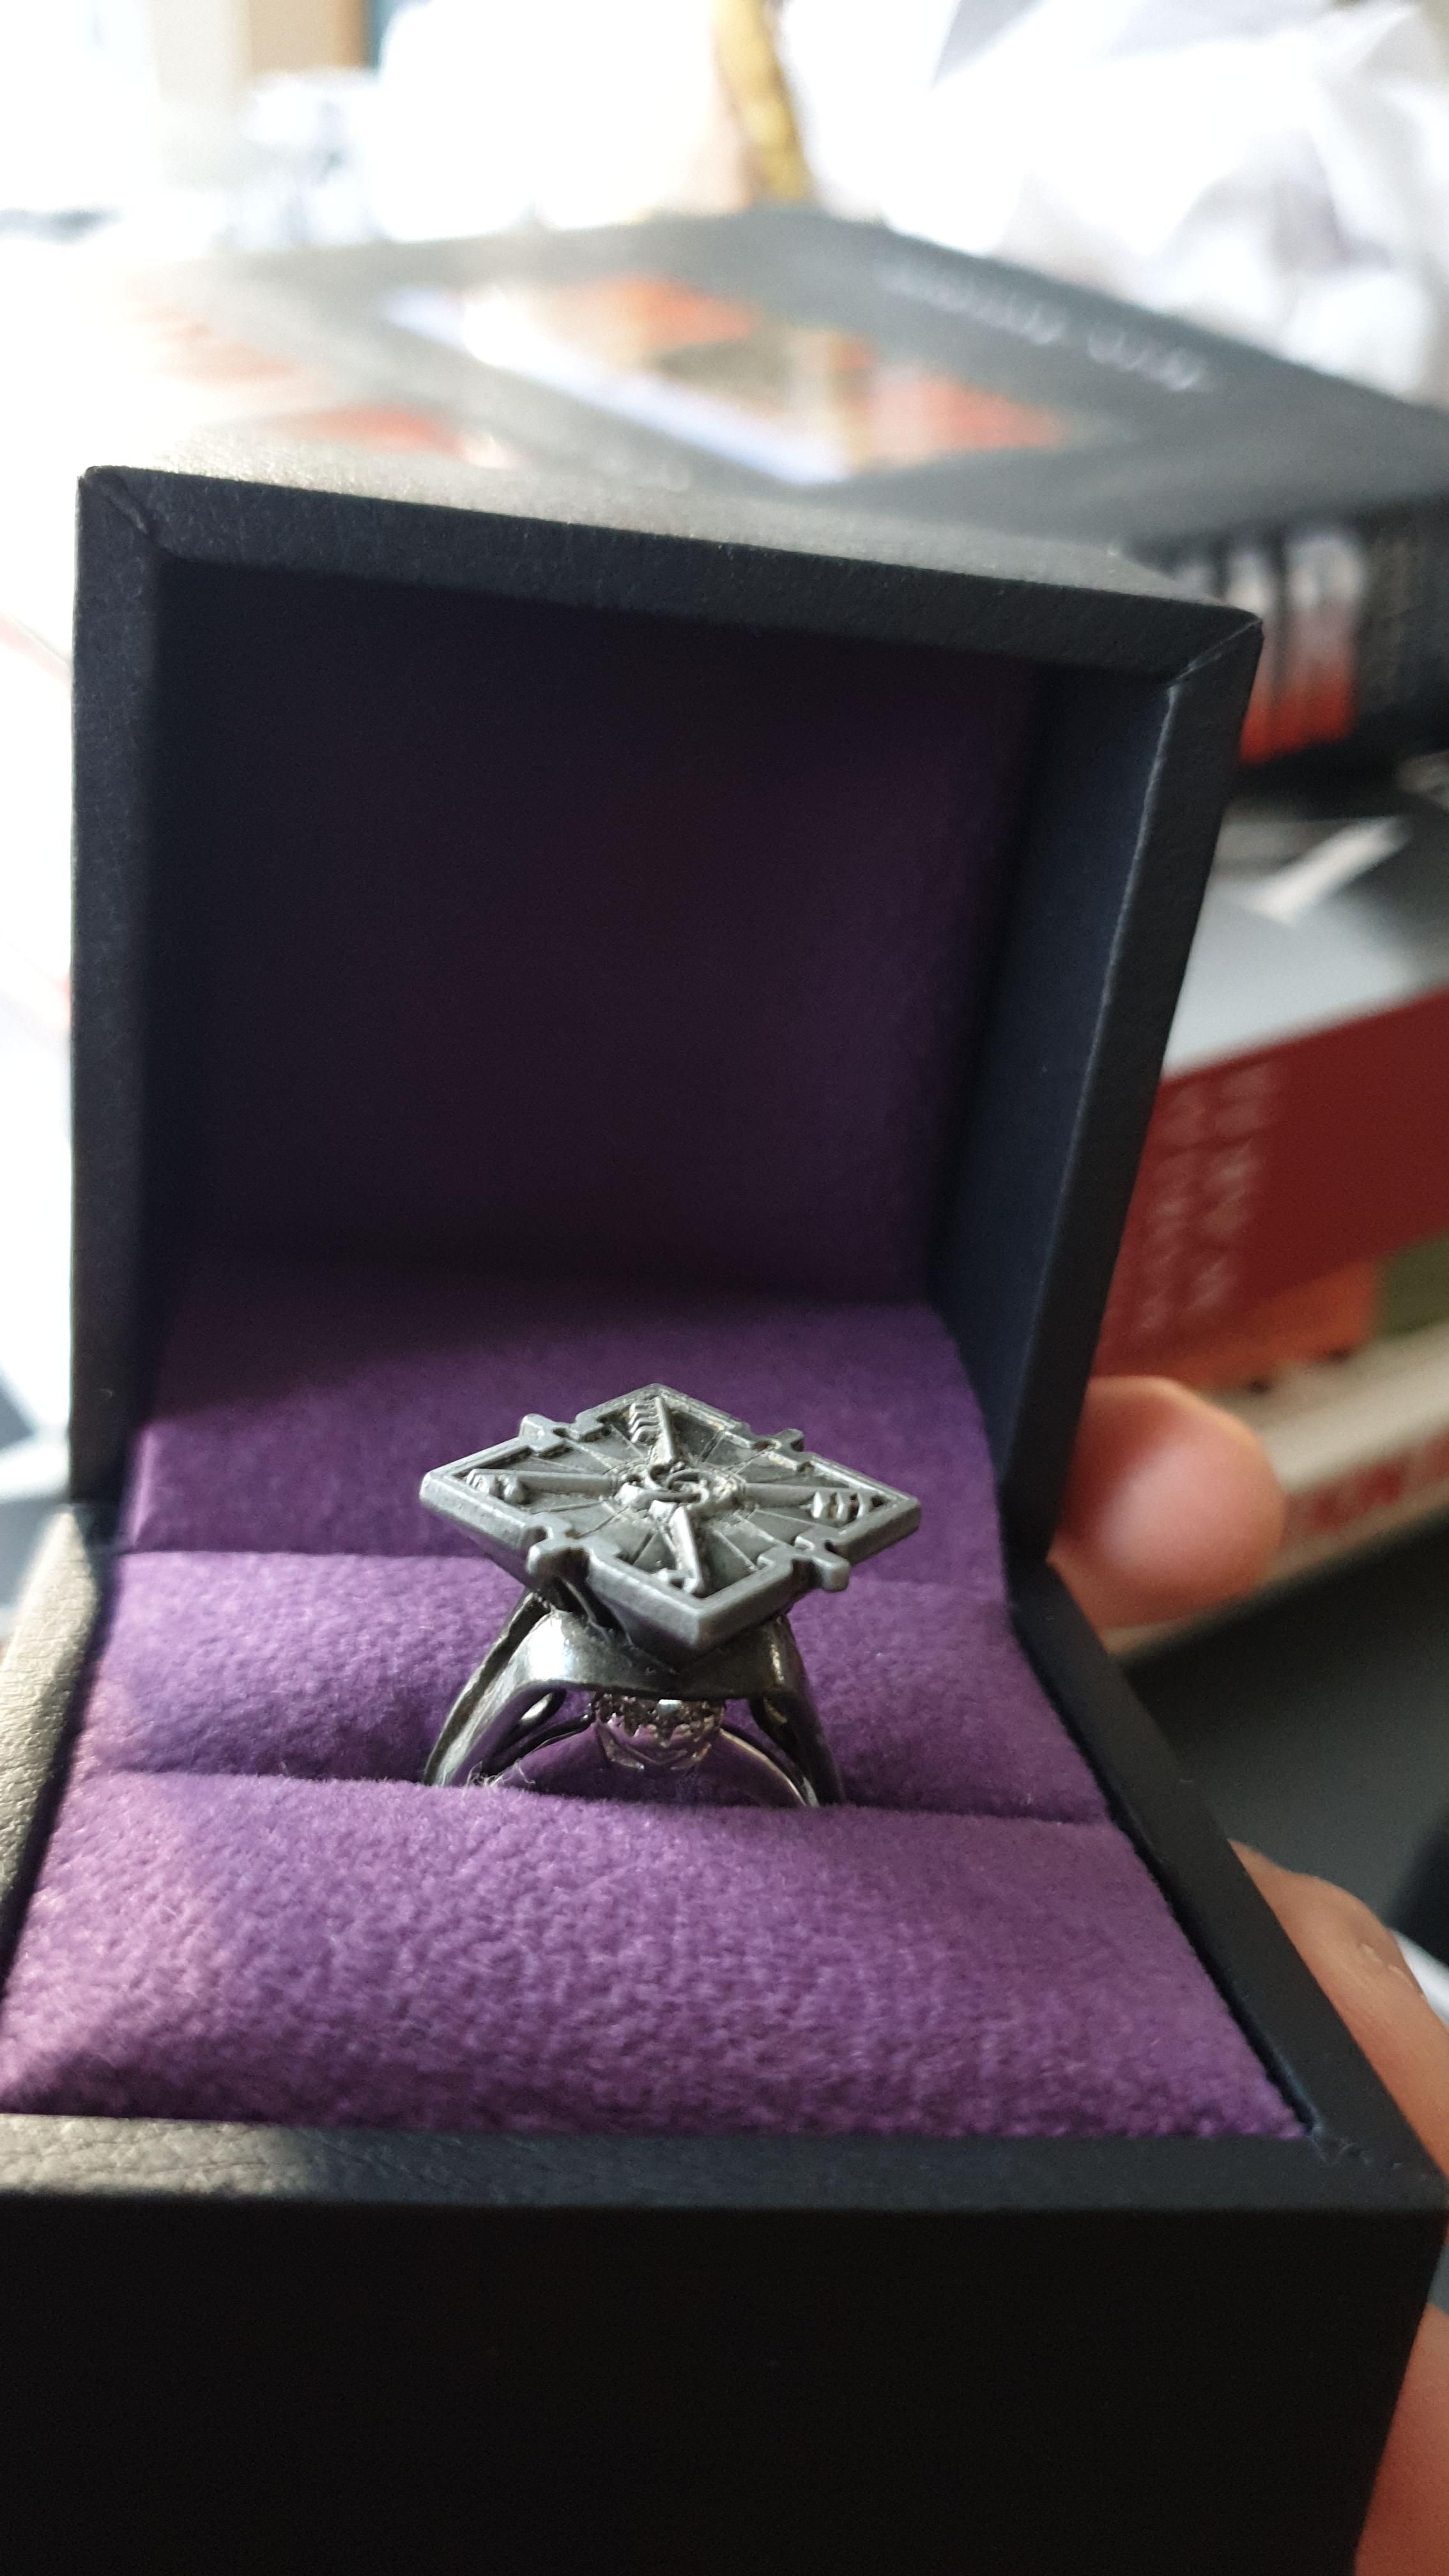 Императорский перстень с печаткой из Dishonored 2 и настоящее кольцо, спрятанное под ним. Источник: reddit